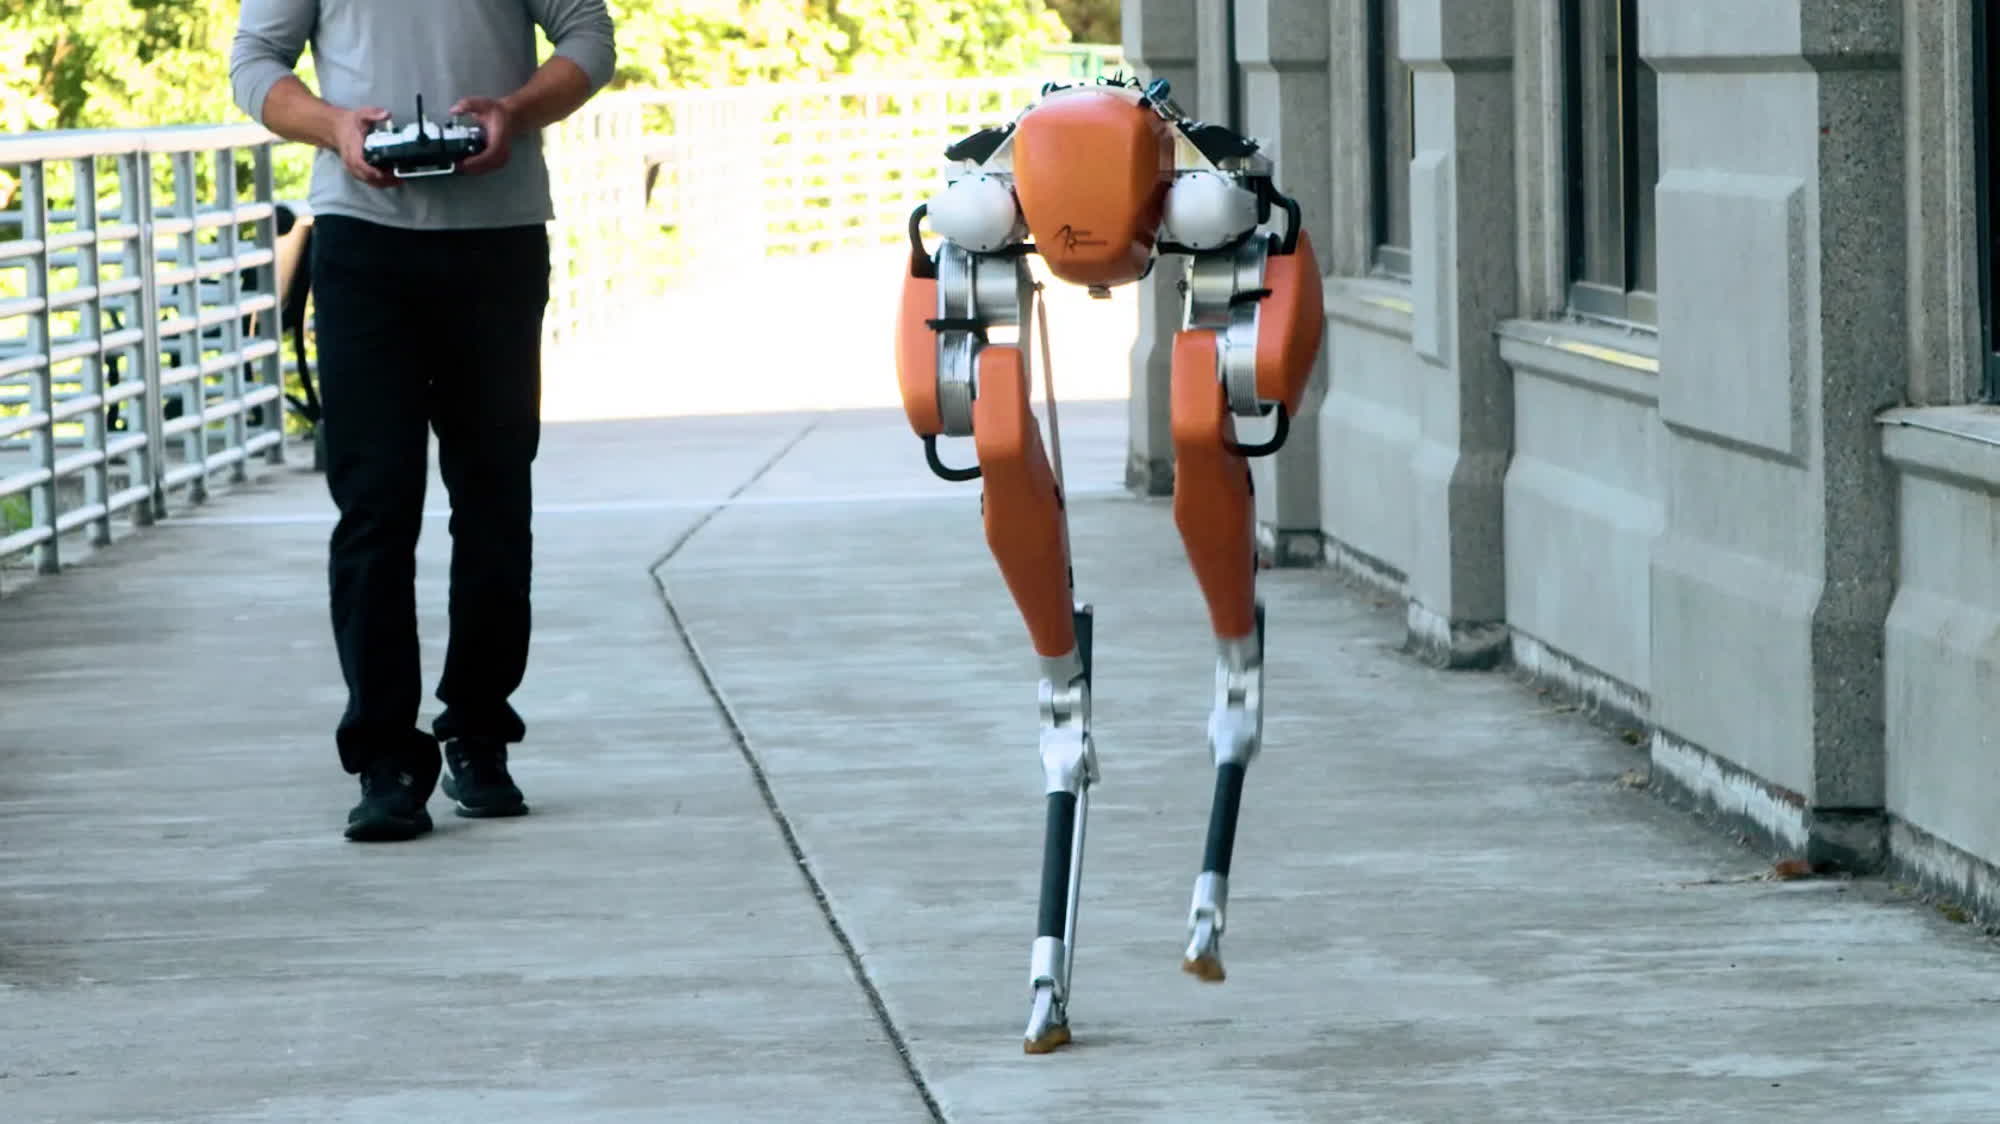 Robots will soon roam South Korea's sidewalks